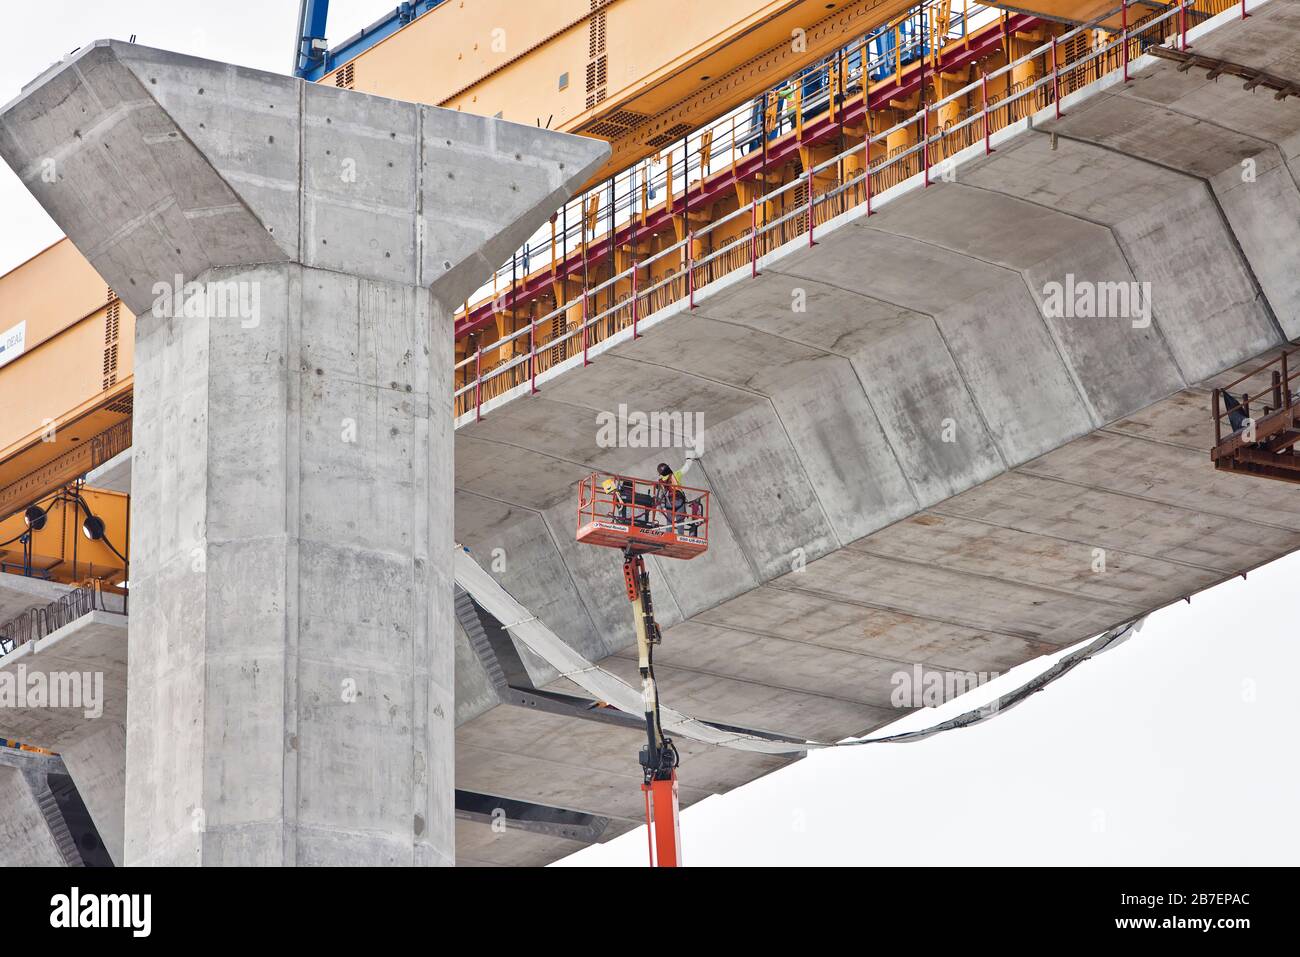 Nuova costruzione del ponte sul porto, pensata per i lavoratori con sollevatore esteso, per la pulizia dei giunti in cemento sotto il ponte. Foto Stock